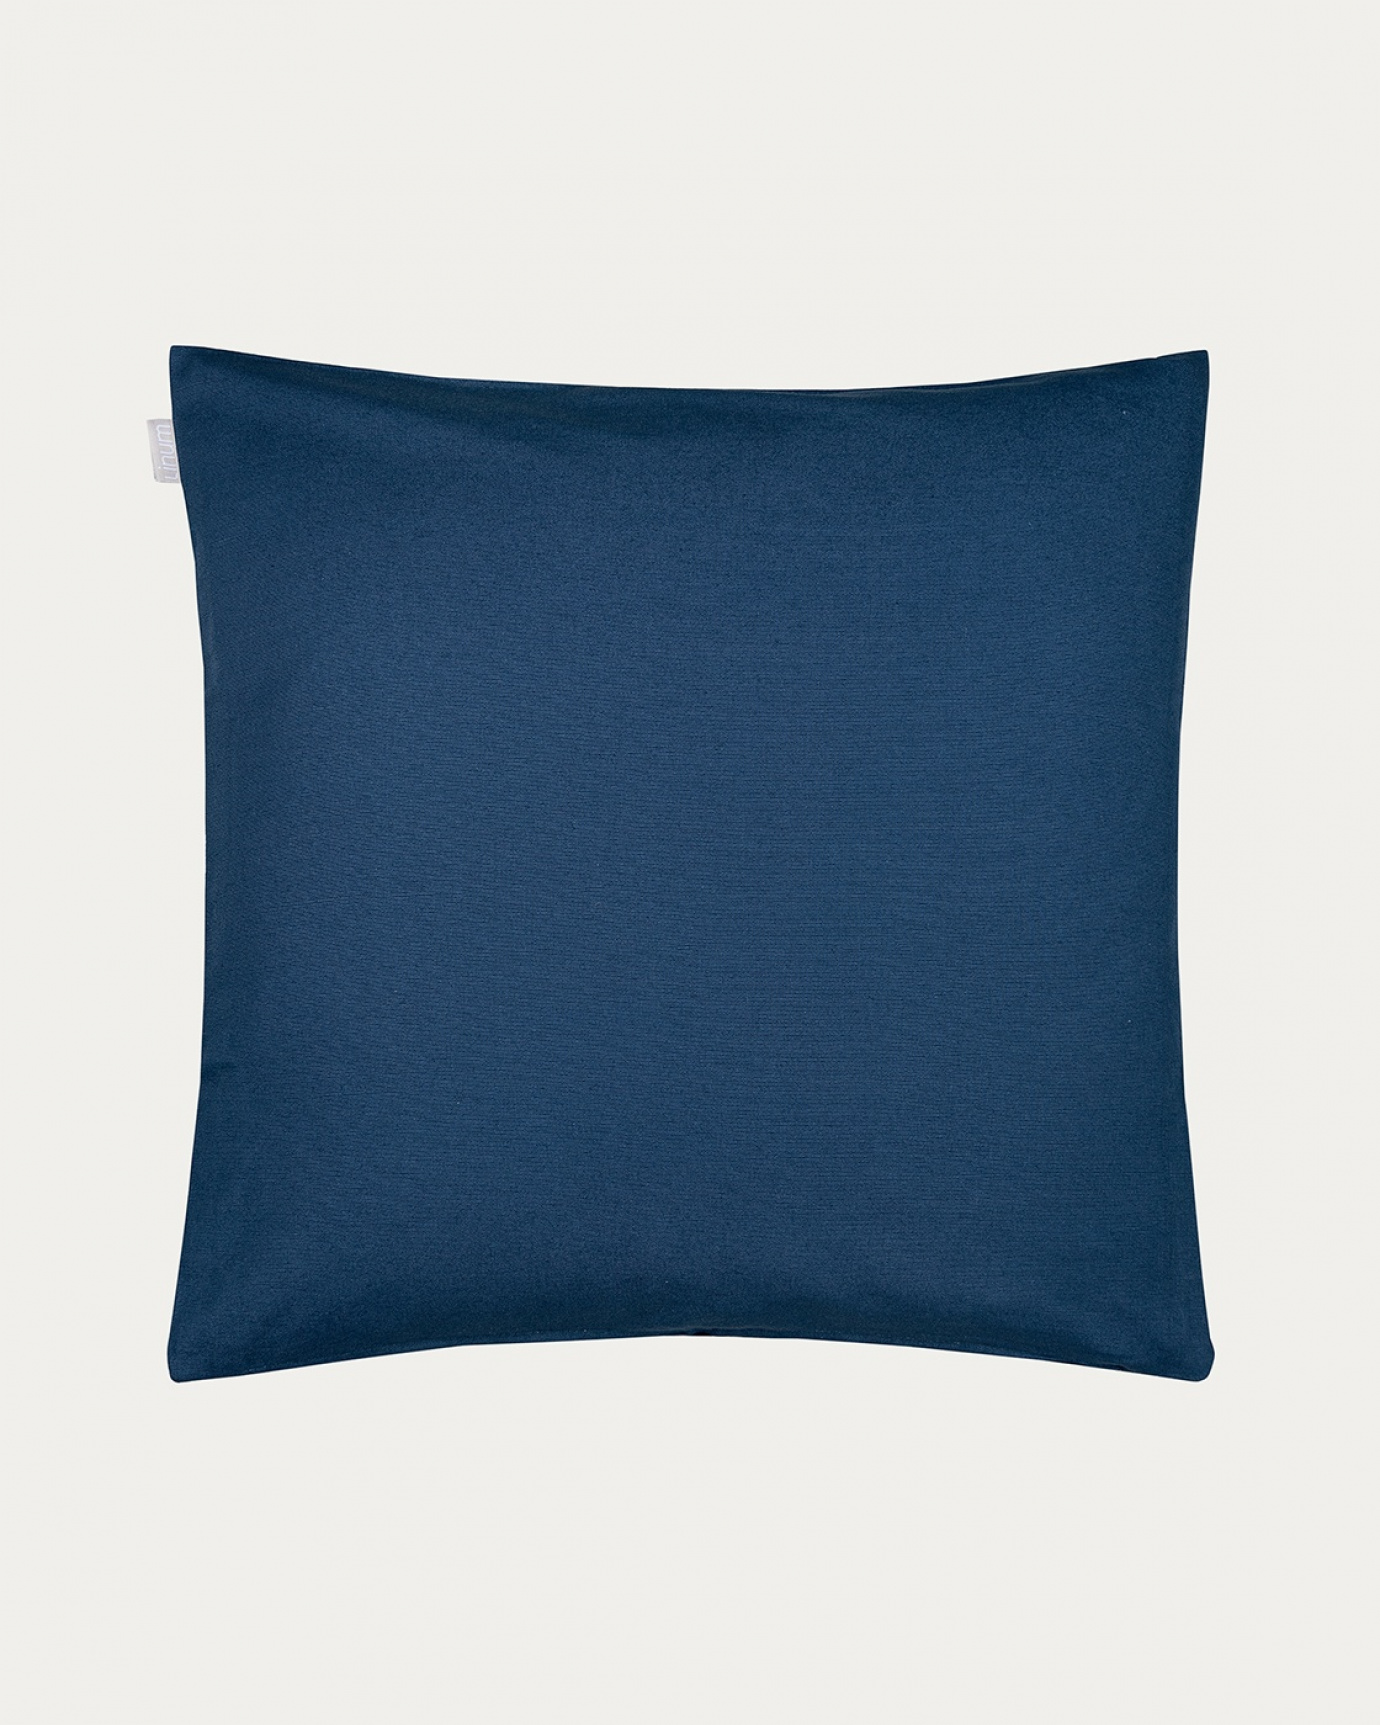 Produktbild indigoblau ANNABELL Kissenhülle aus weicher Baumwolle von LINUM DESIGN. Größe 50x50 cm.